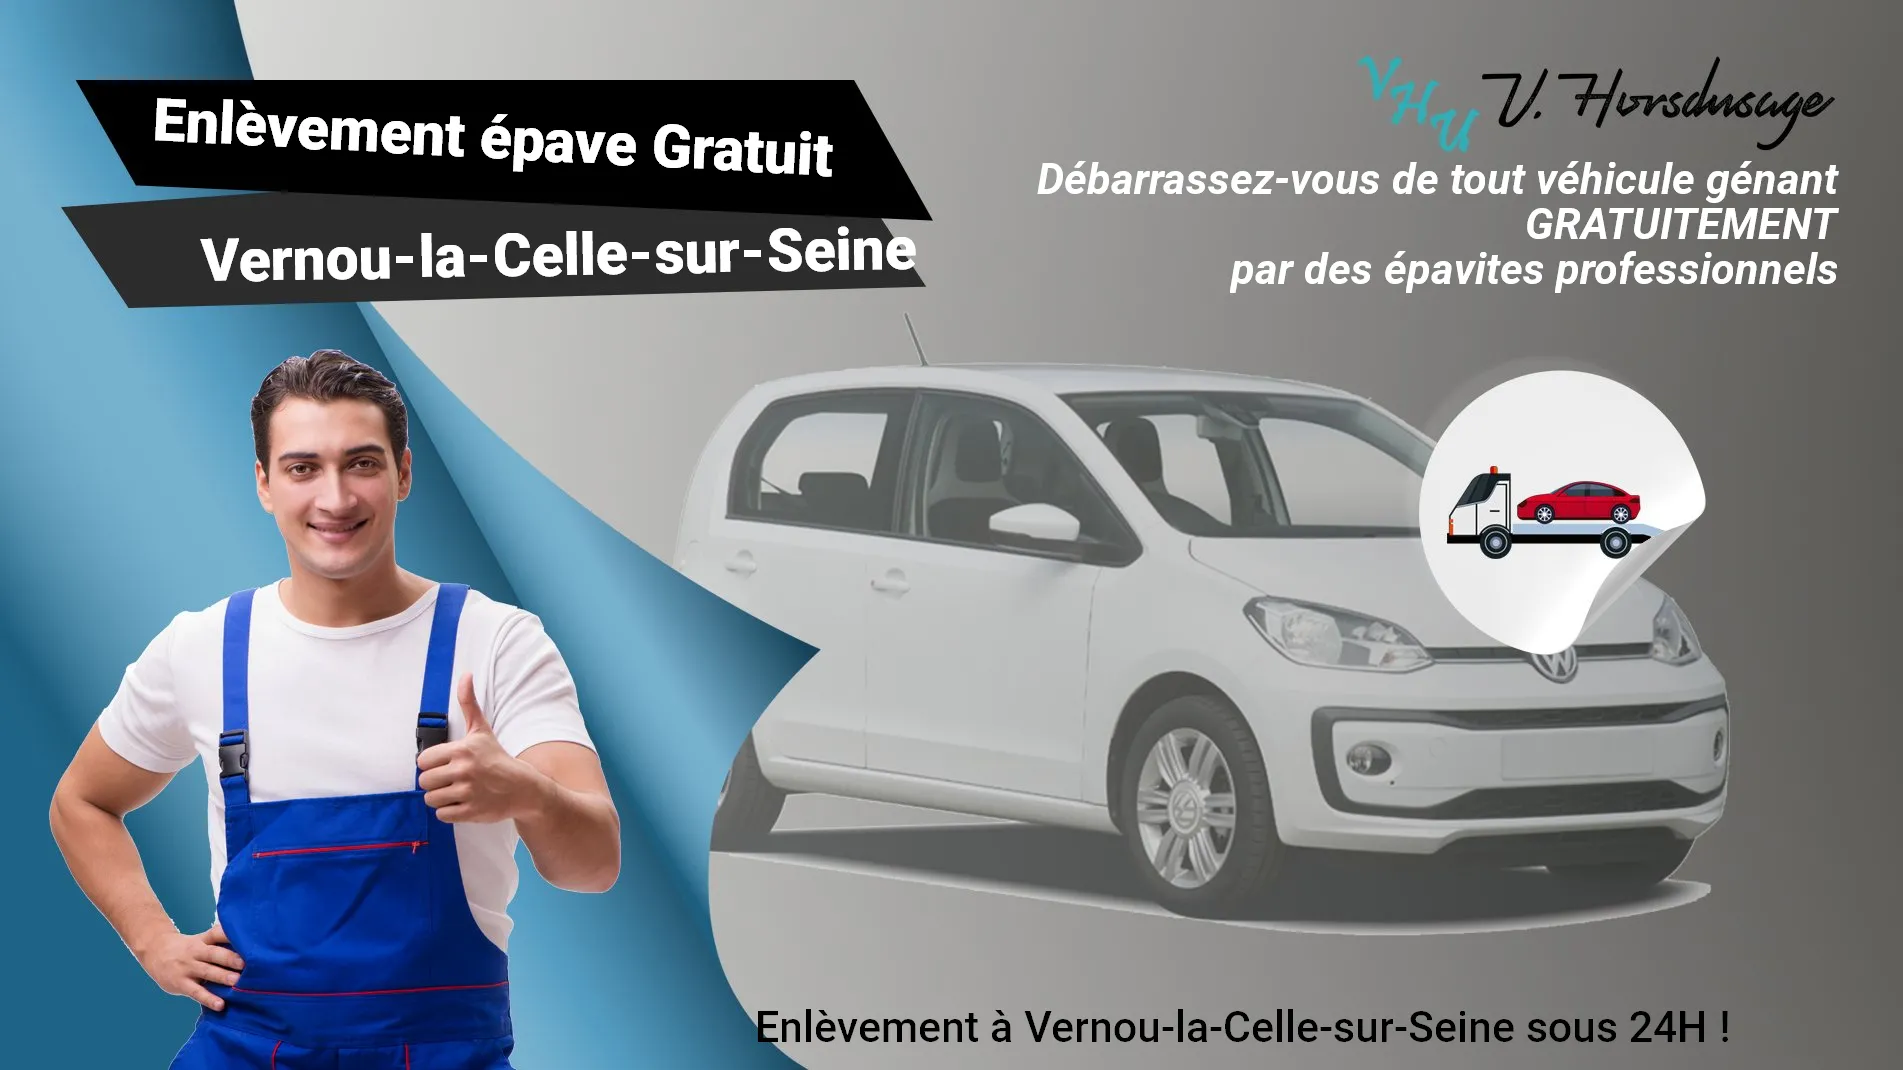 Pour un enlèvement gratuit à Vernou-la-Celle-sur-Seine, contactez nos épavistes agréé VHU